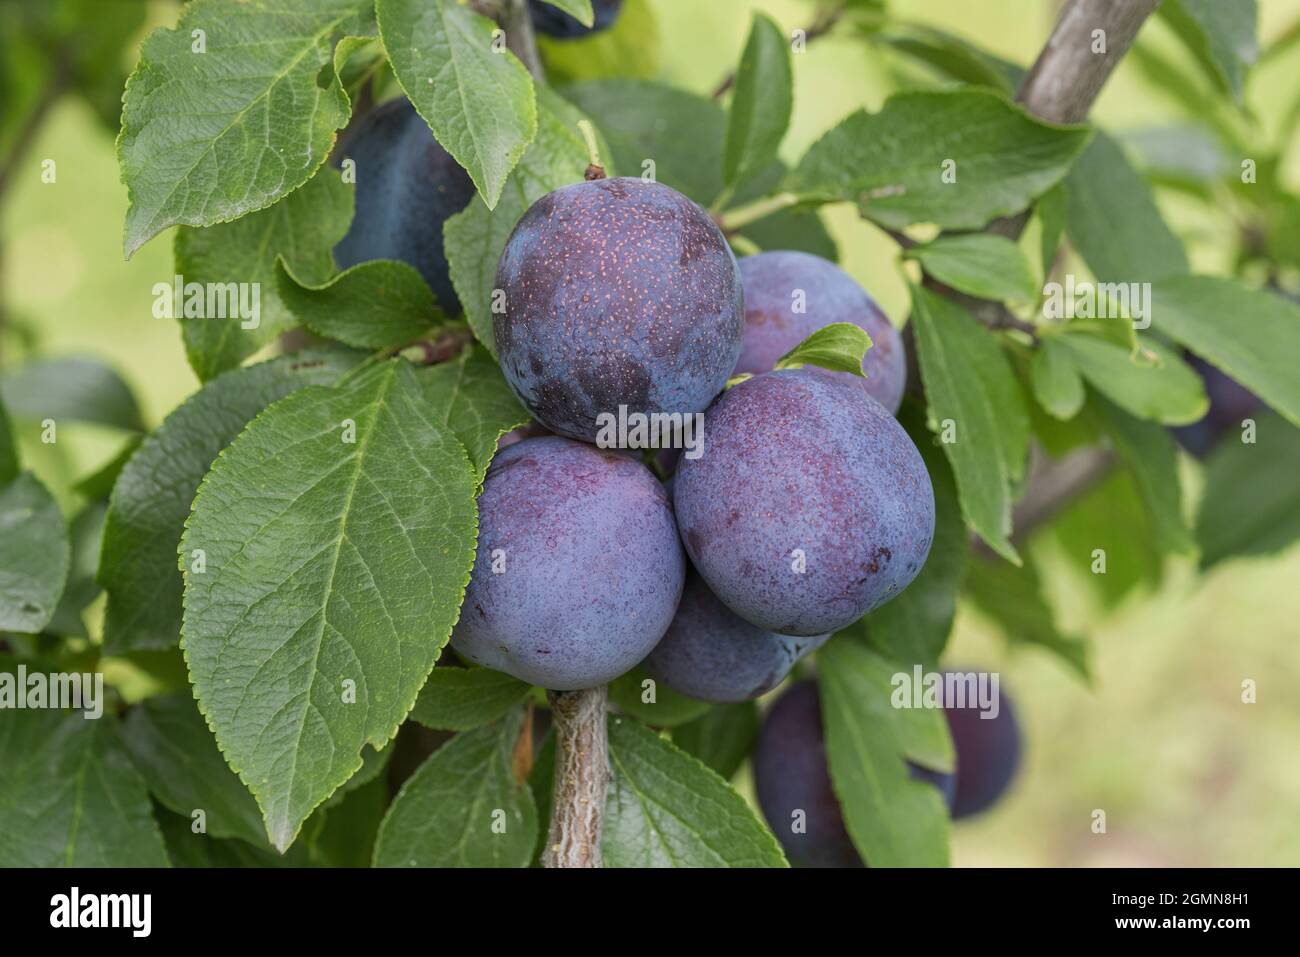 Europäische Pflaume (Prunus domestica 'Anna Spaeth', Prunus domestica Anna Spaeth), Pflaumen auf einem Zweig, Sorte Anna Spaeth Stockfoto